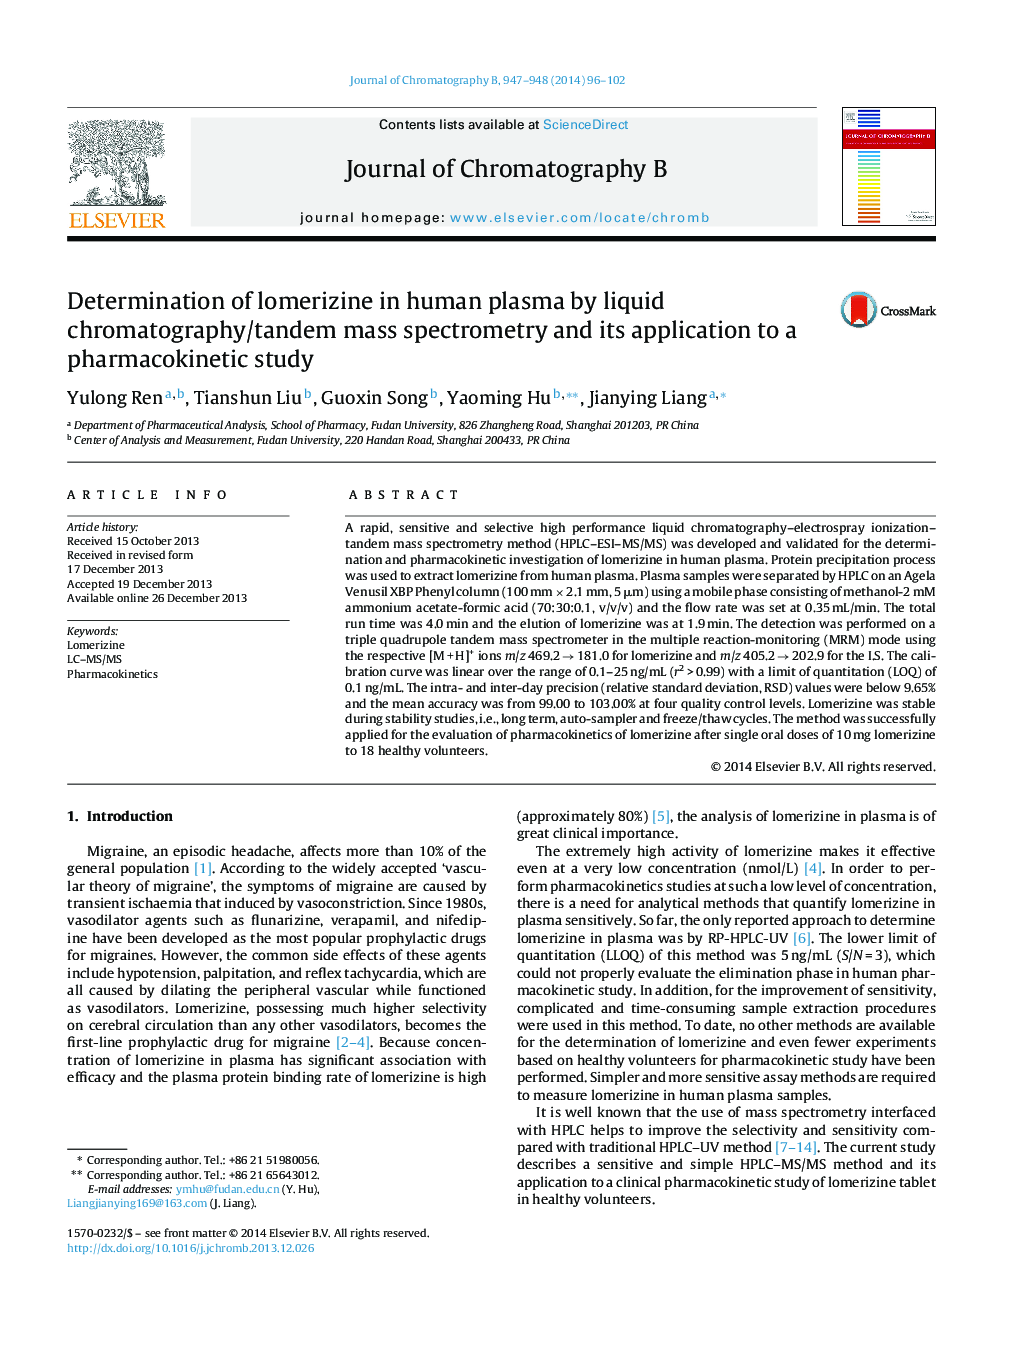 تعیین لوموریزین در پلاسمای انسان با استفاده از کروماتوگرافی مایع / طیف سنجی جرم دو طرفه و کاربرد آن در مطالعه فارماکوکینتیک 